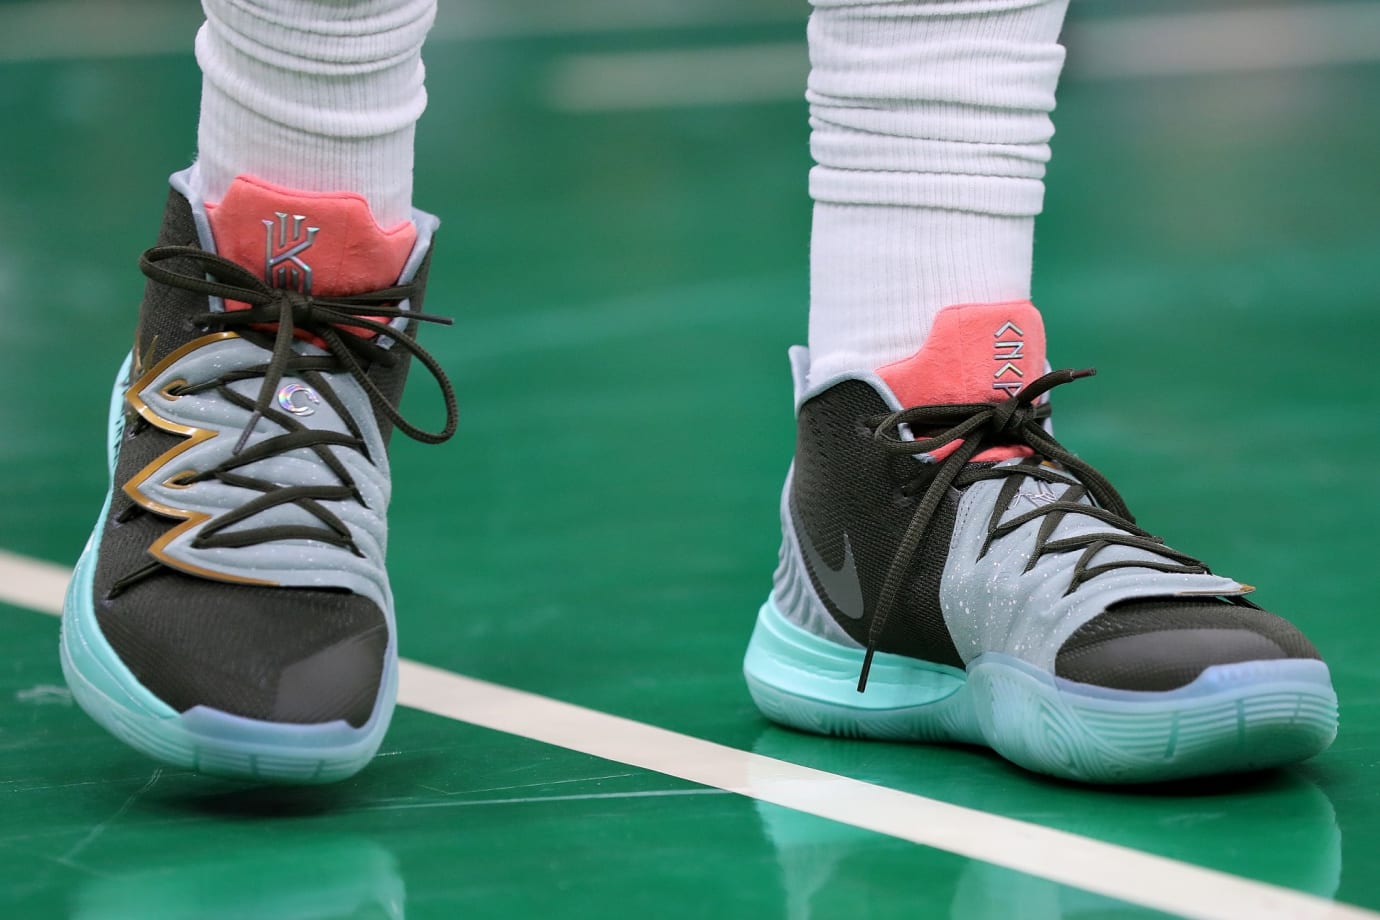 Nike Kyrie 5 'Galaxy' Krepšinio batai Skelbiu.lt